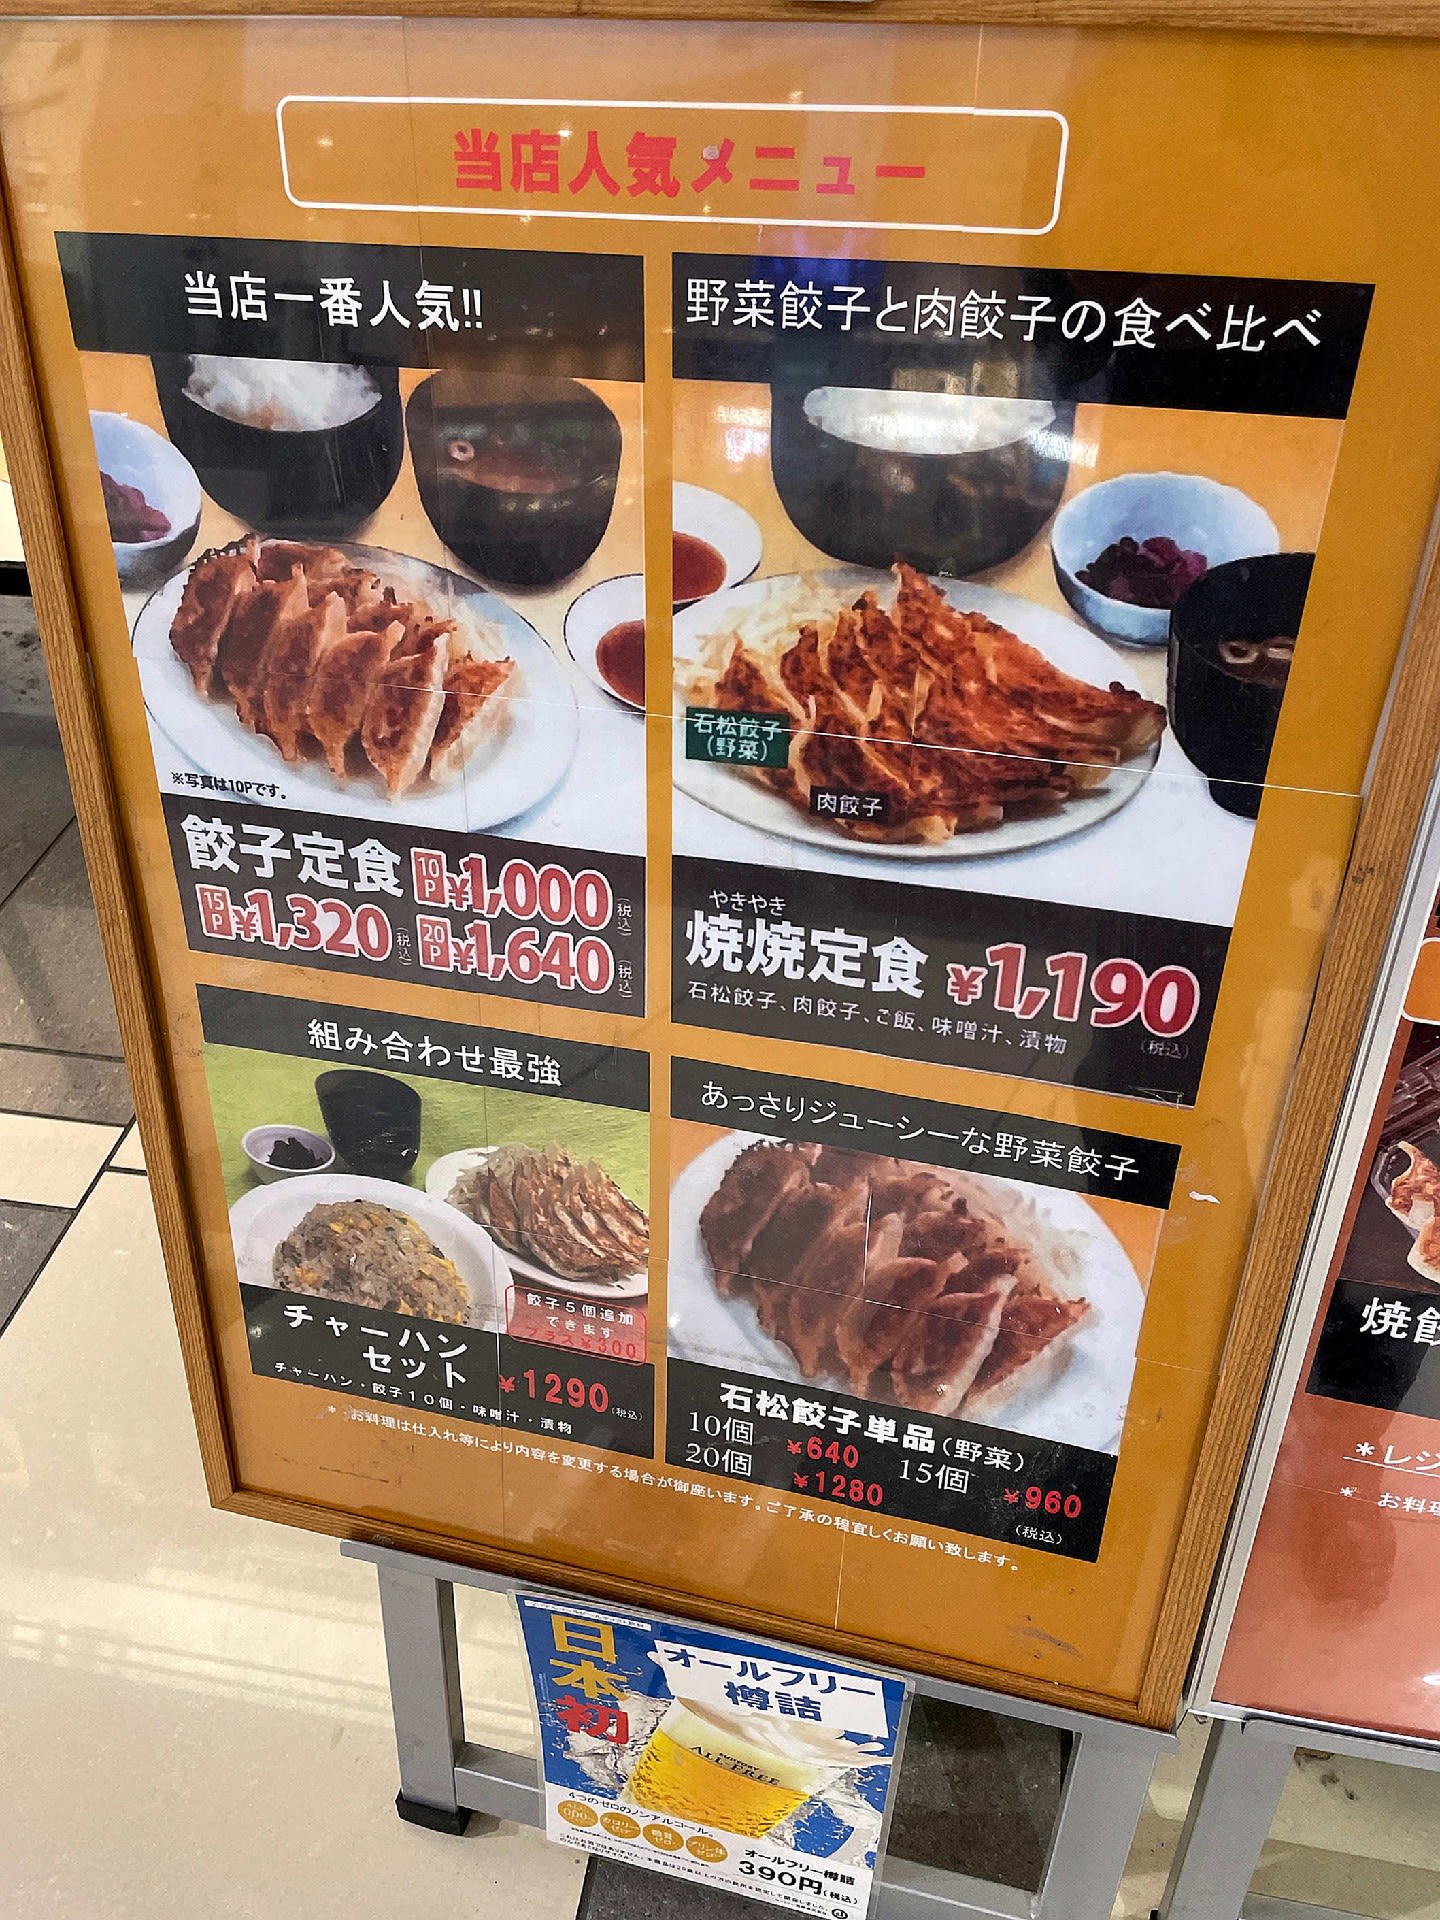 石松餃子 新東名店 おじさんの外食